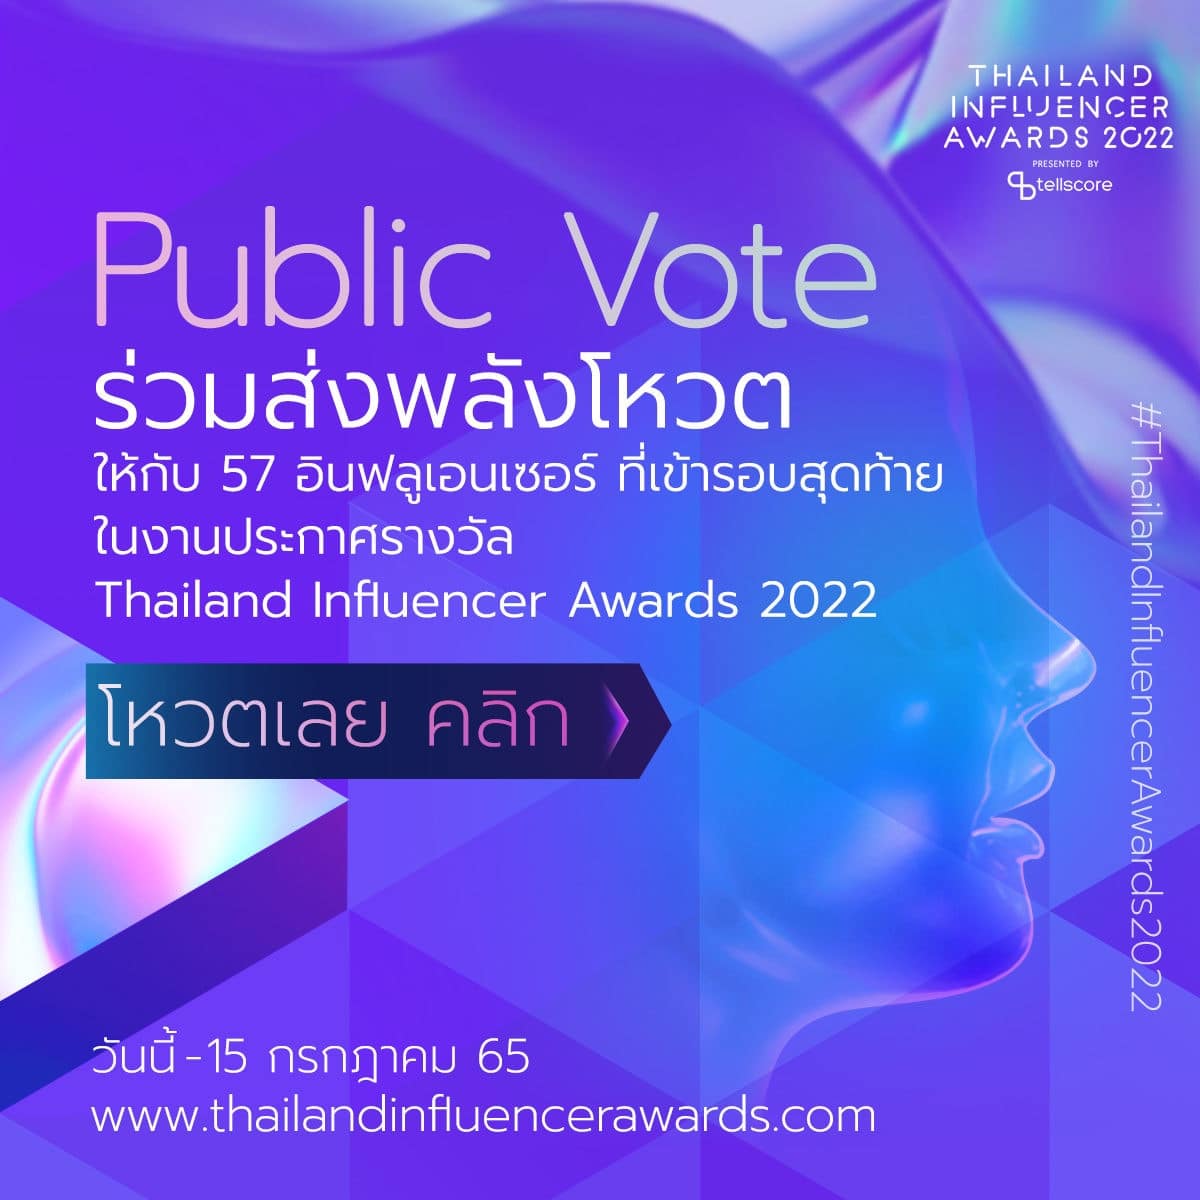 Thailand Influencer Awards 2022